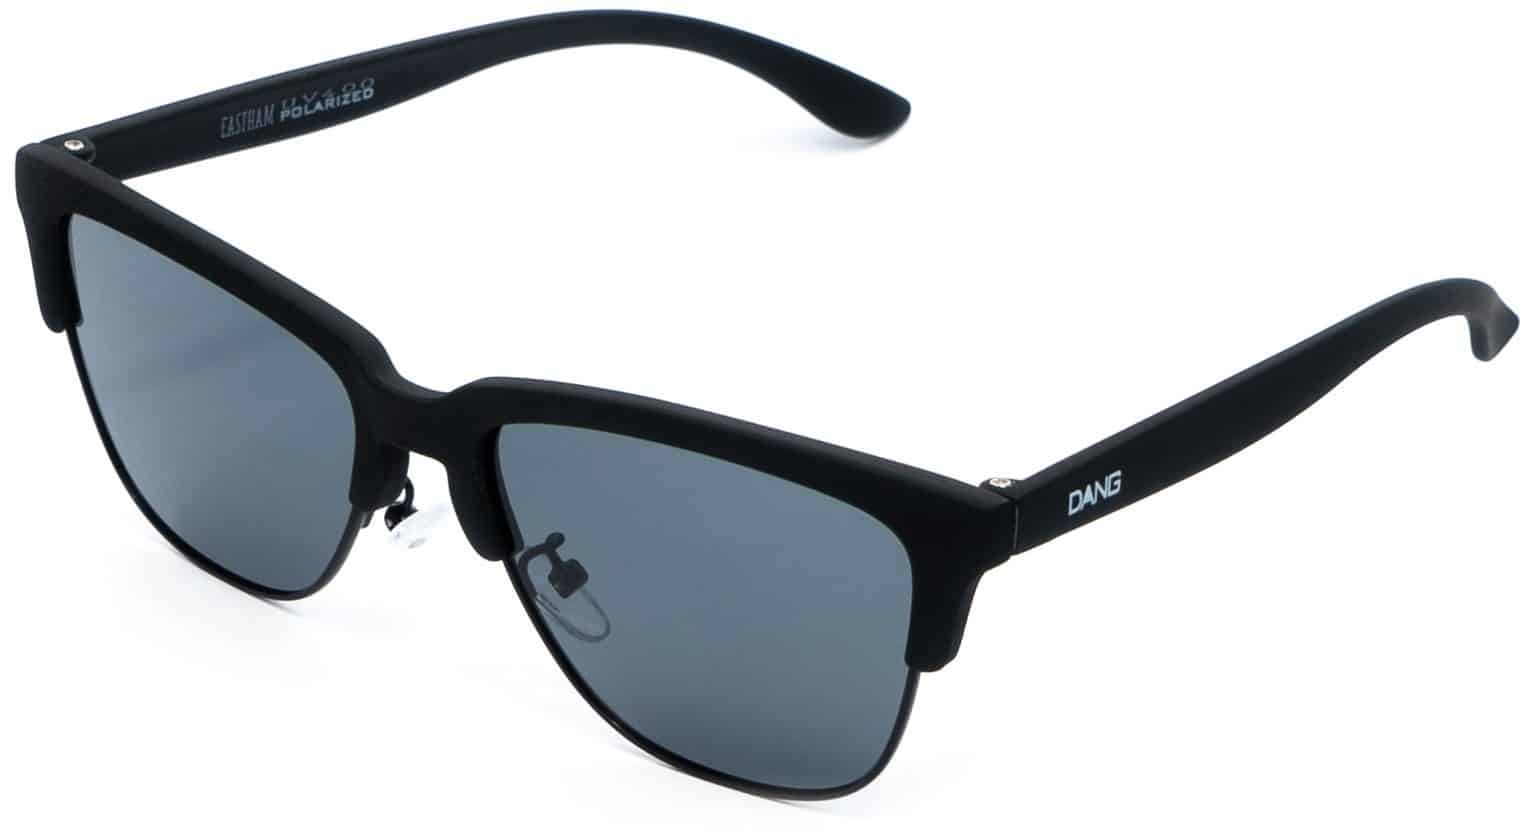 Dang Shades Eastham Polarized Sunglasses - matte black/smoke polarized ...